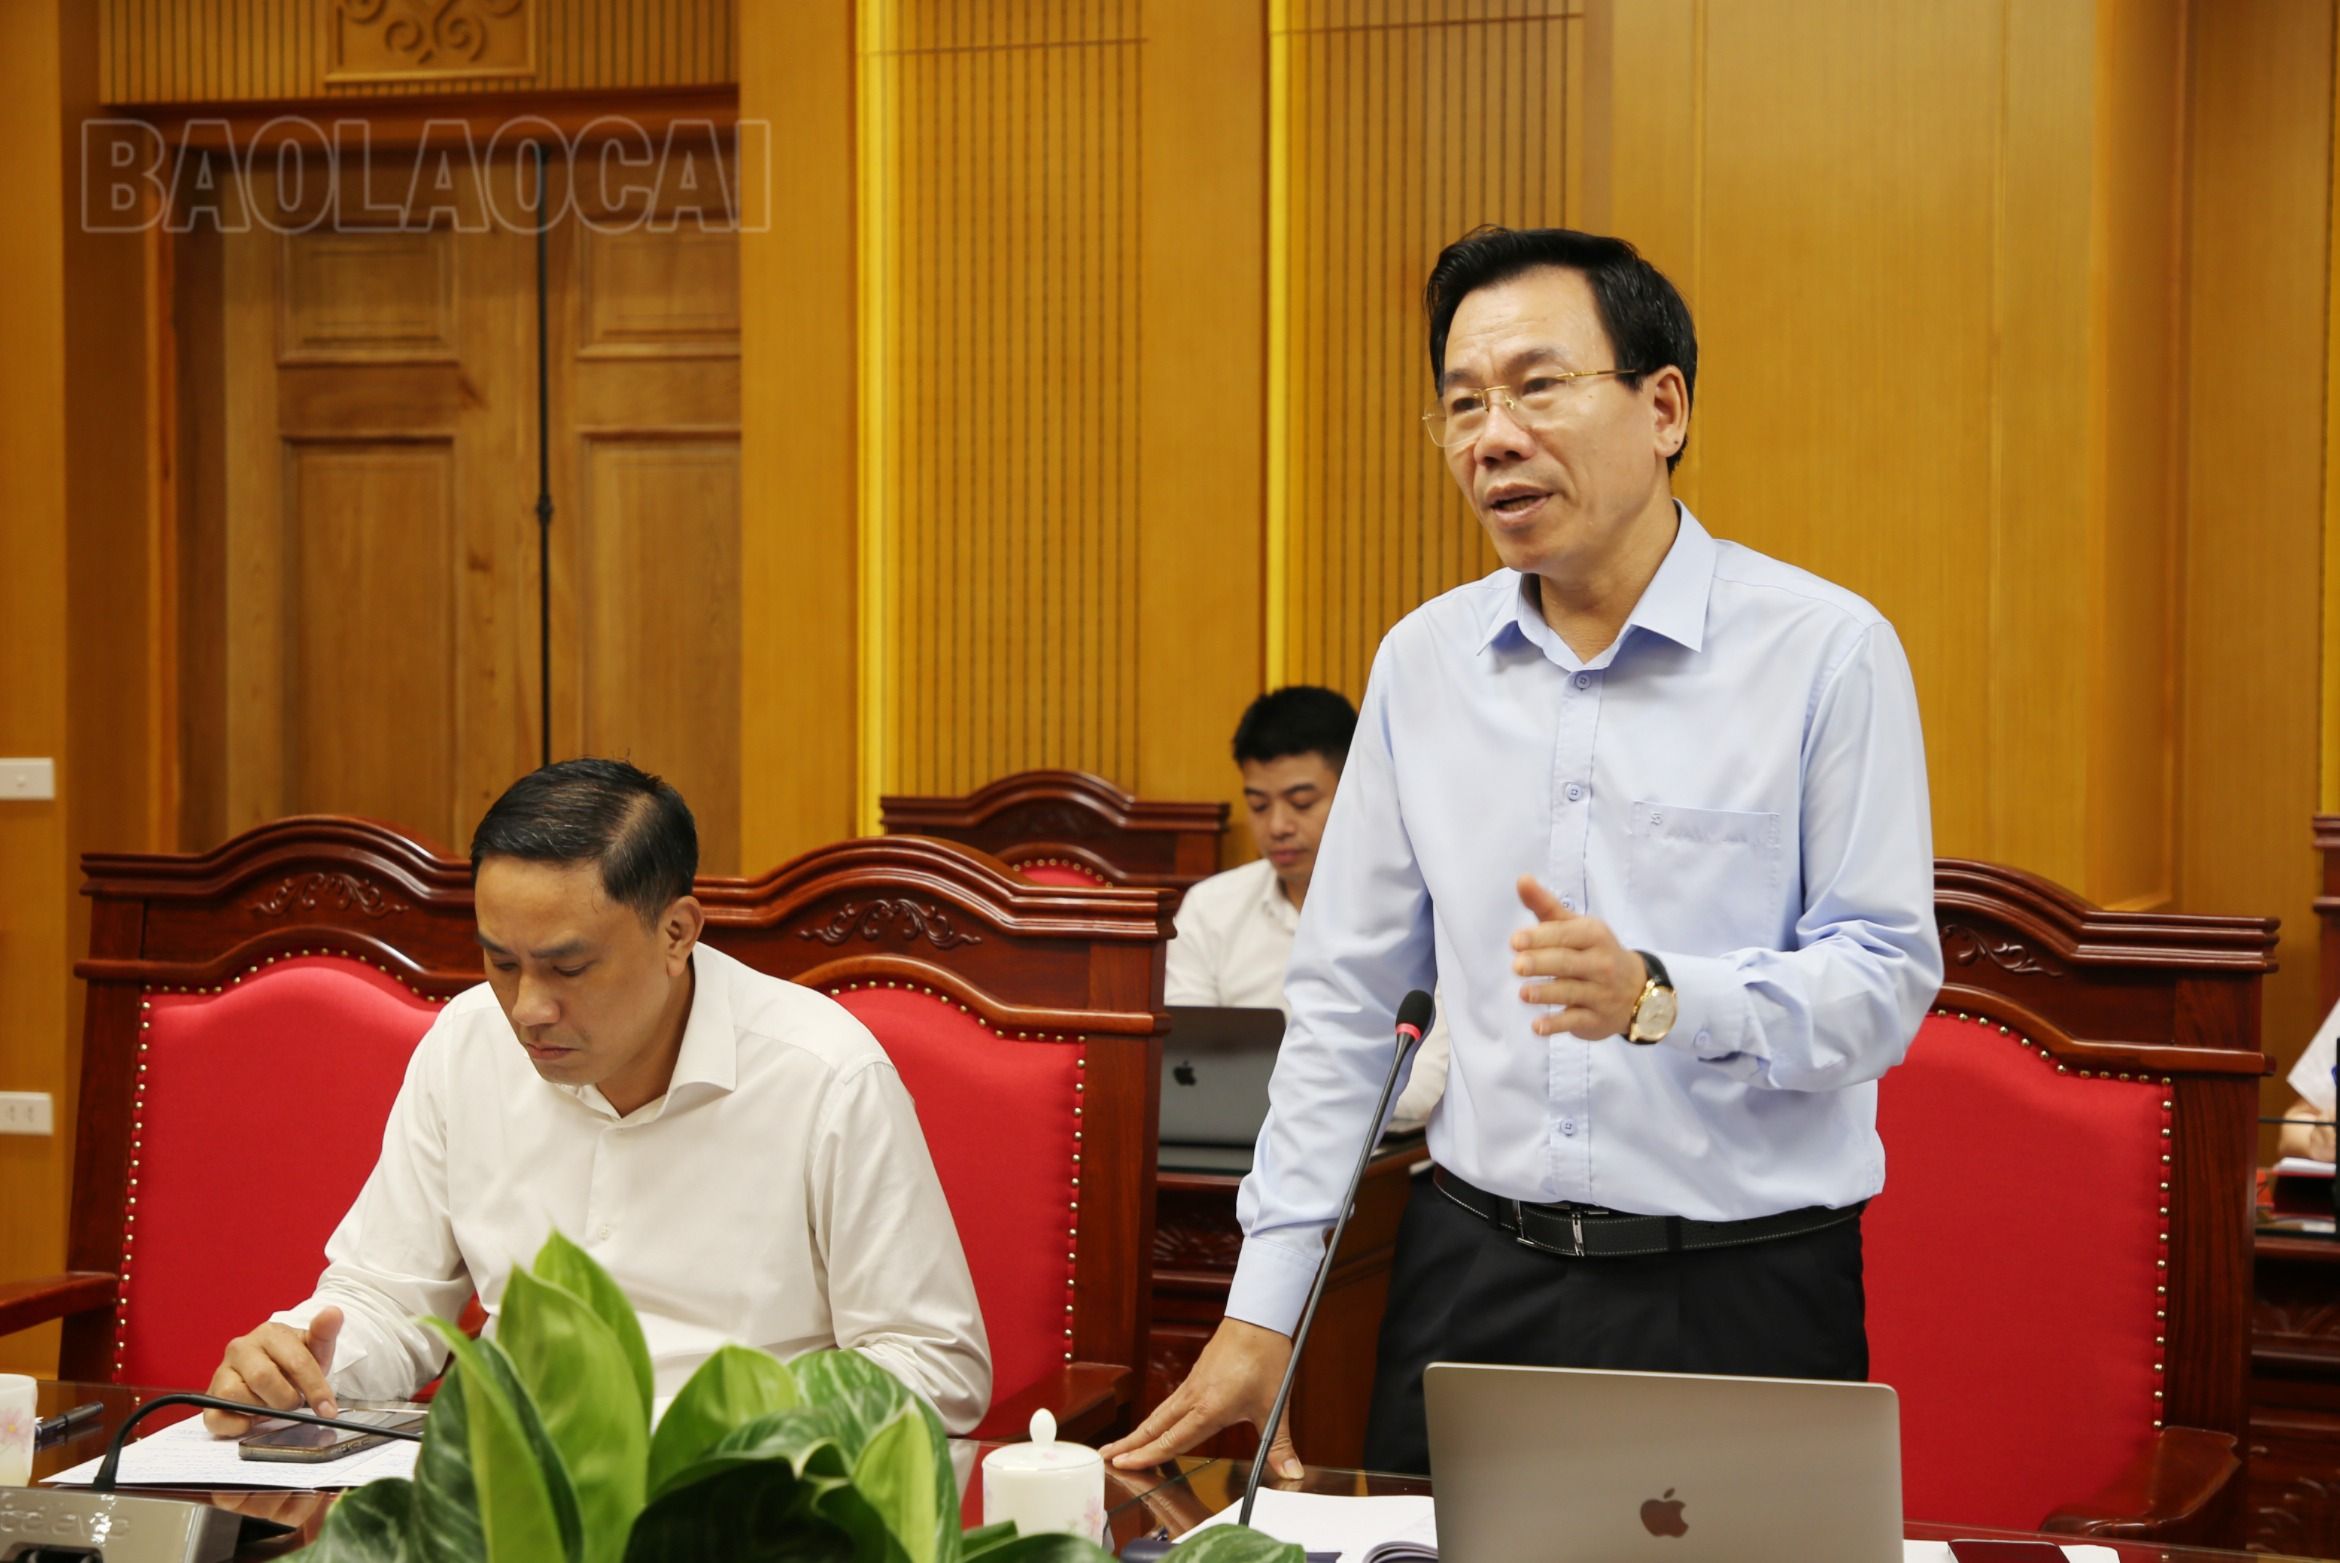 Đồng chí Dương Đức Huy phát biểu về công tác chuyển đổi số của các cơ quan khối Đảng nói chung và chuyển đổi số trong lĩnh vực tuyên giáo nói riêng.